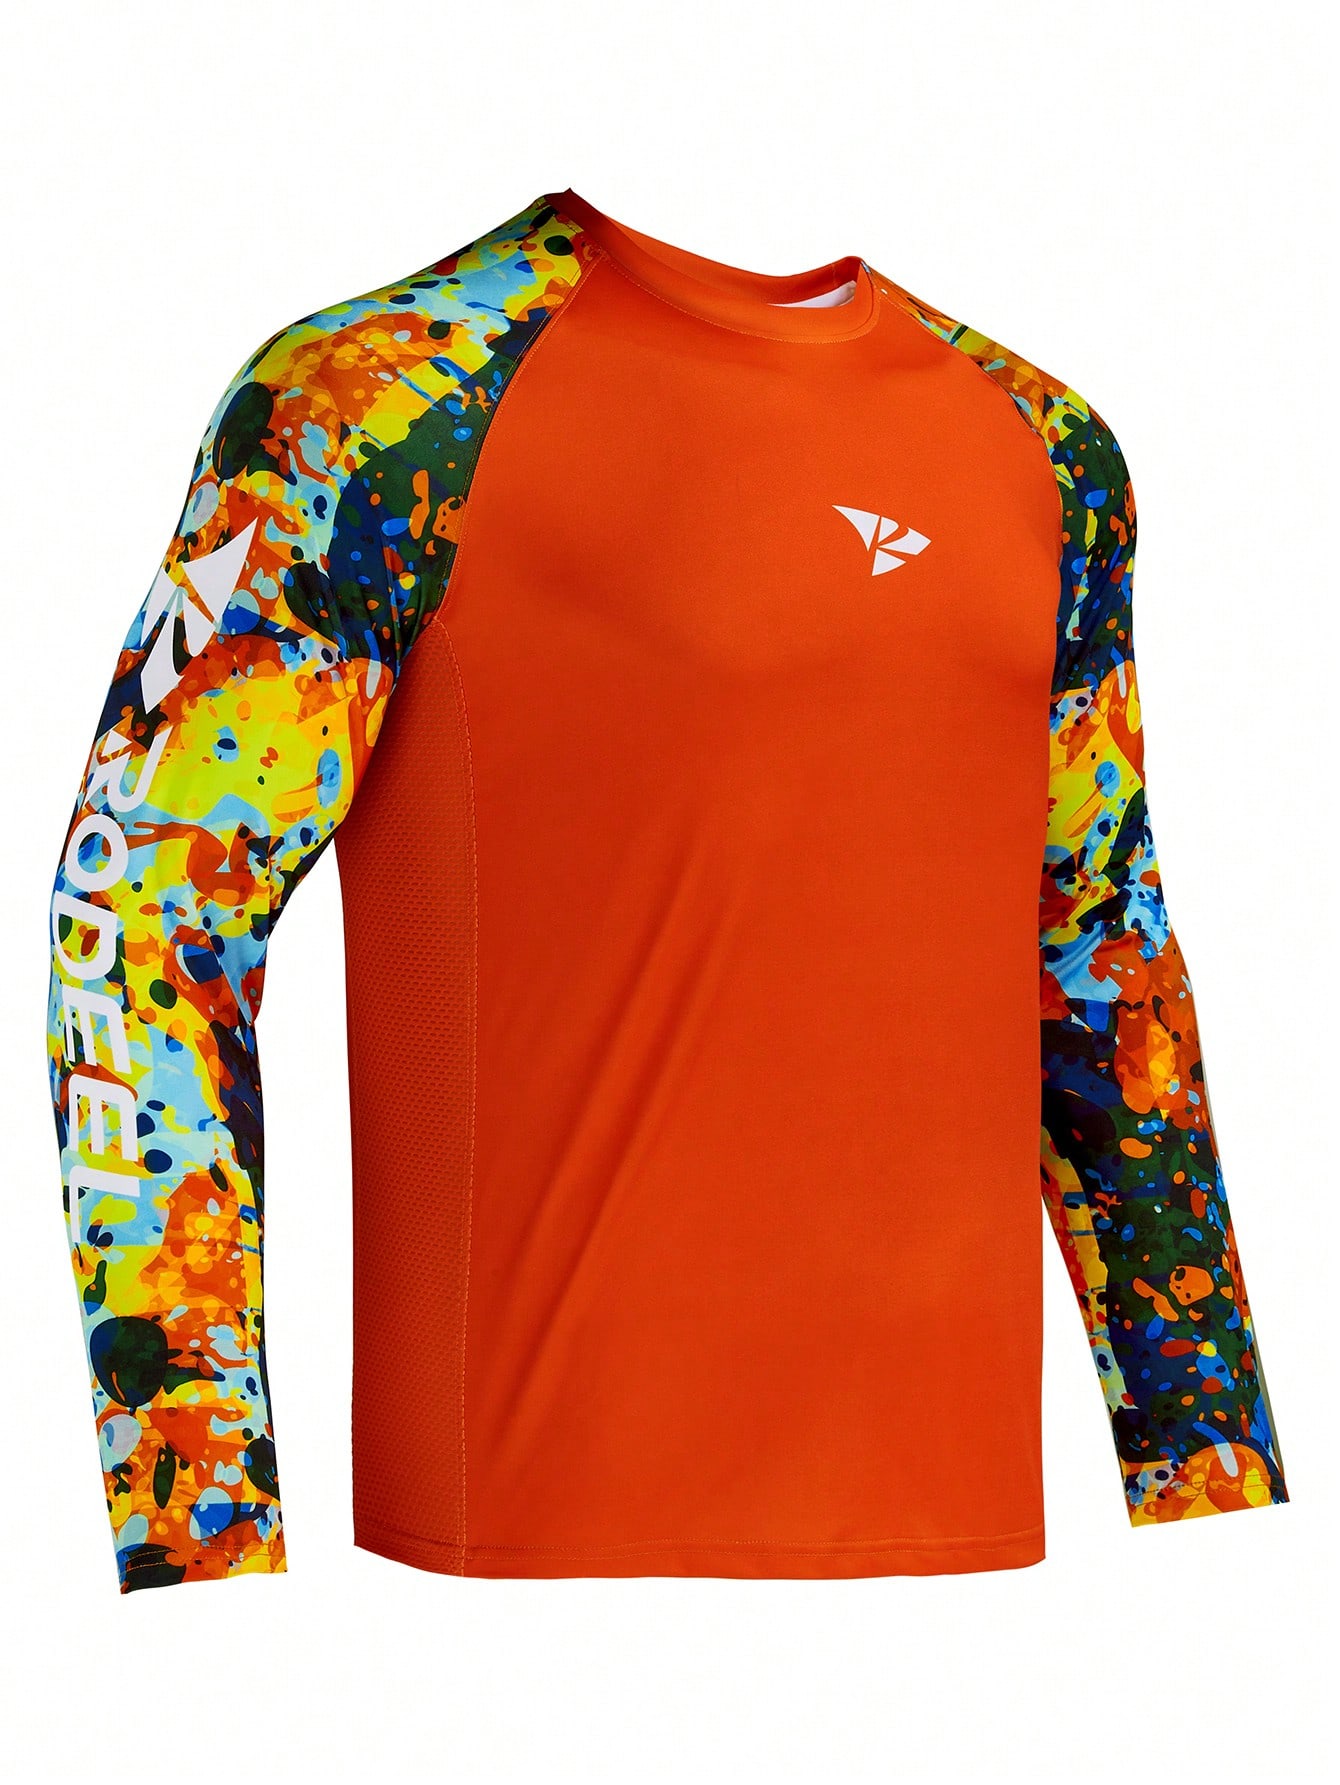 RODEEL Мужская рубашка с защитой от солнца, апельсин новинка 2021 походные и рыболовные рубашки gamakatsu спортивная быстросохнущая мужская одежда для рыбалки одежда для велоспорта и рыбалки